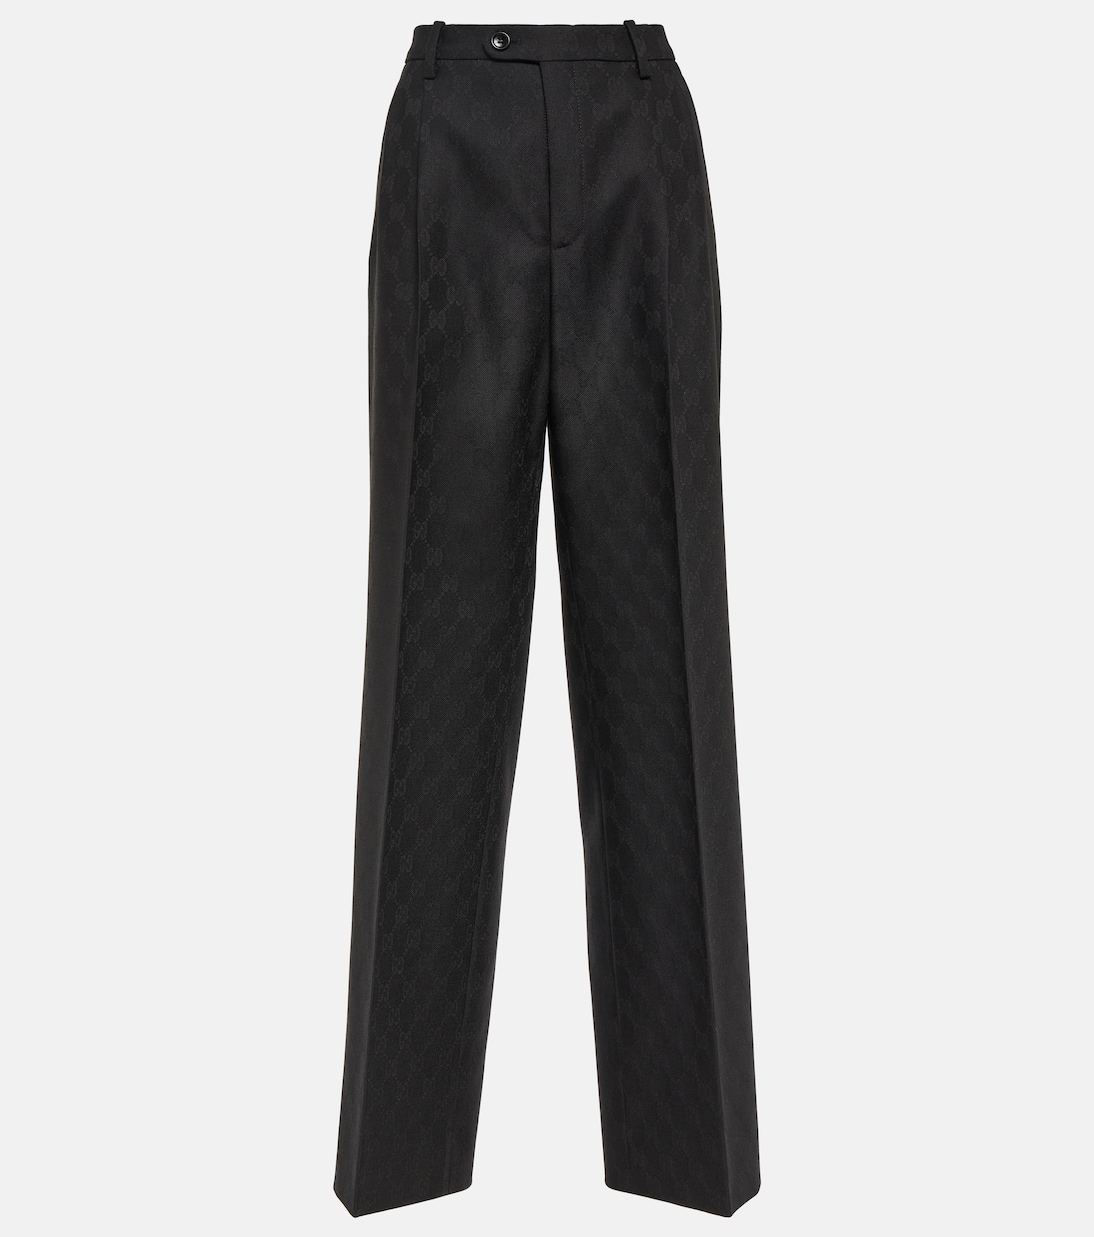 Прямые брюки из шерсти с жаккардовым узором gg и высокой посадкой Gucci, черный